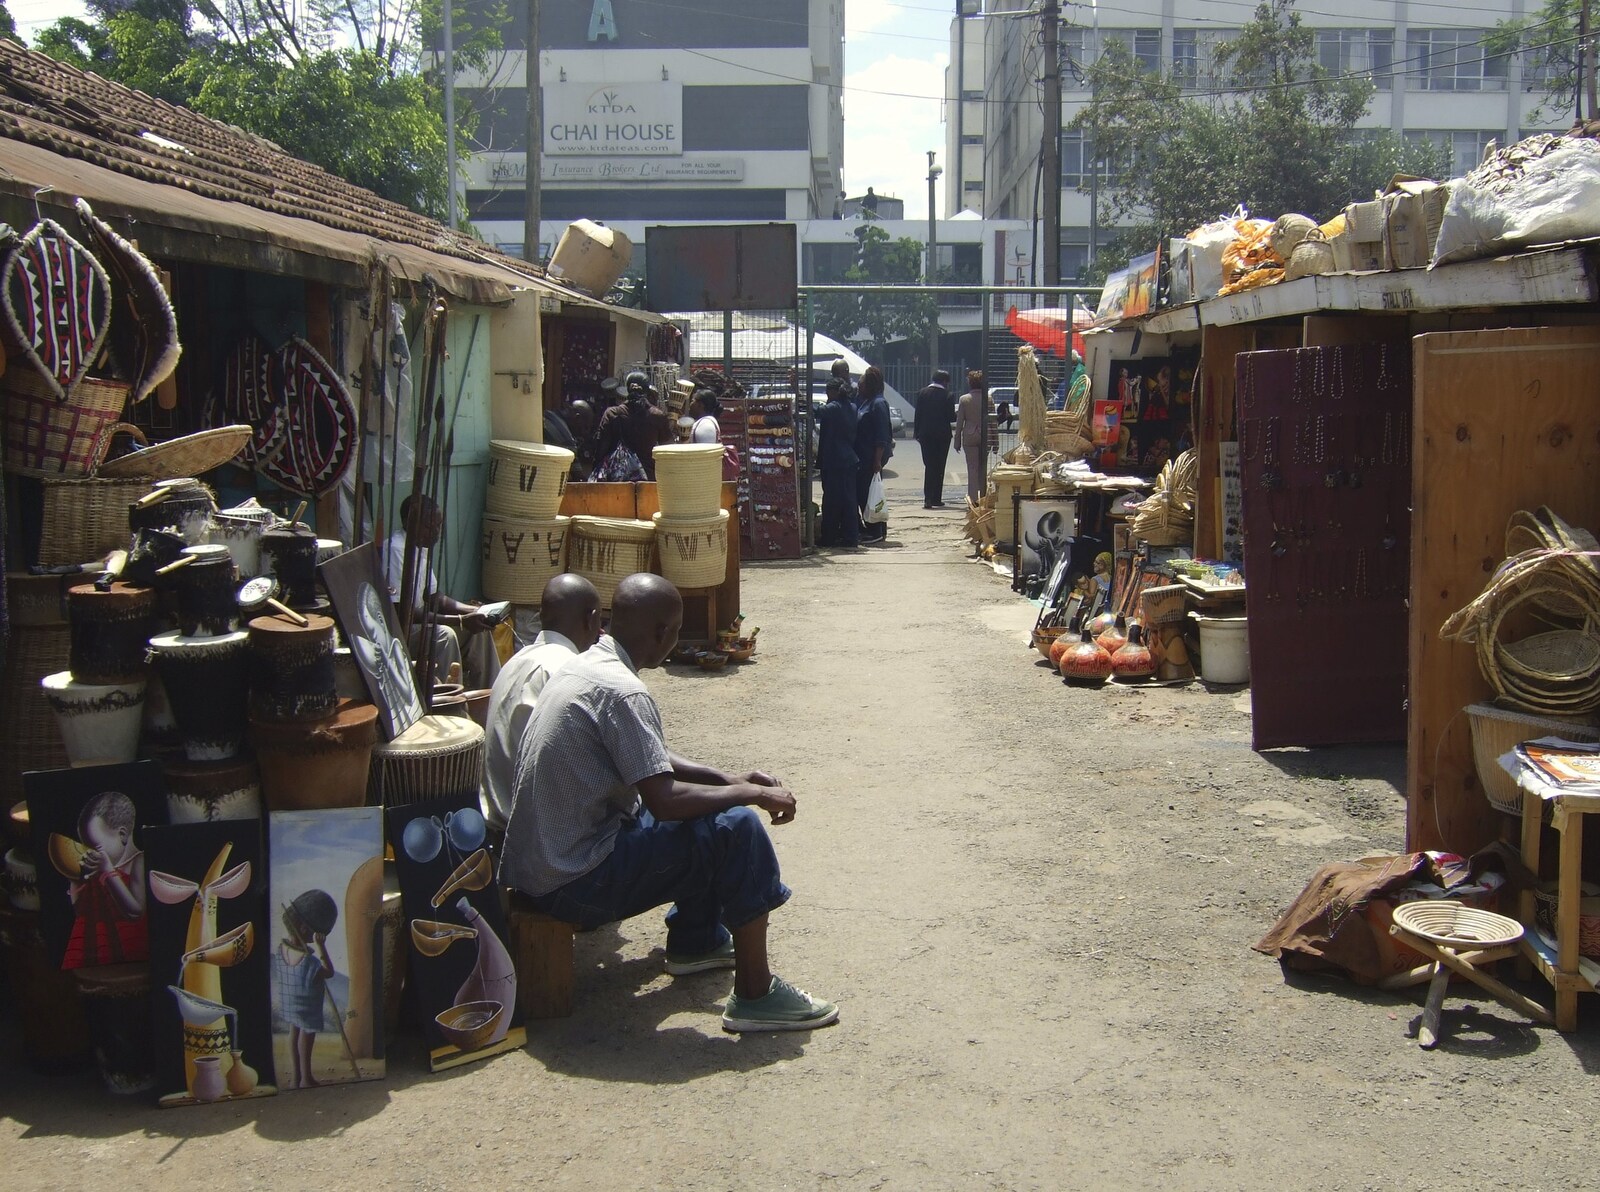 A downtown market from Nairobi and the Road to Maasai Mara, Kenya, Africa - 1st November 2010